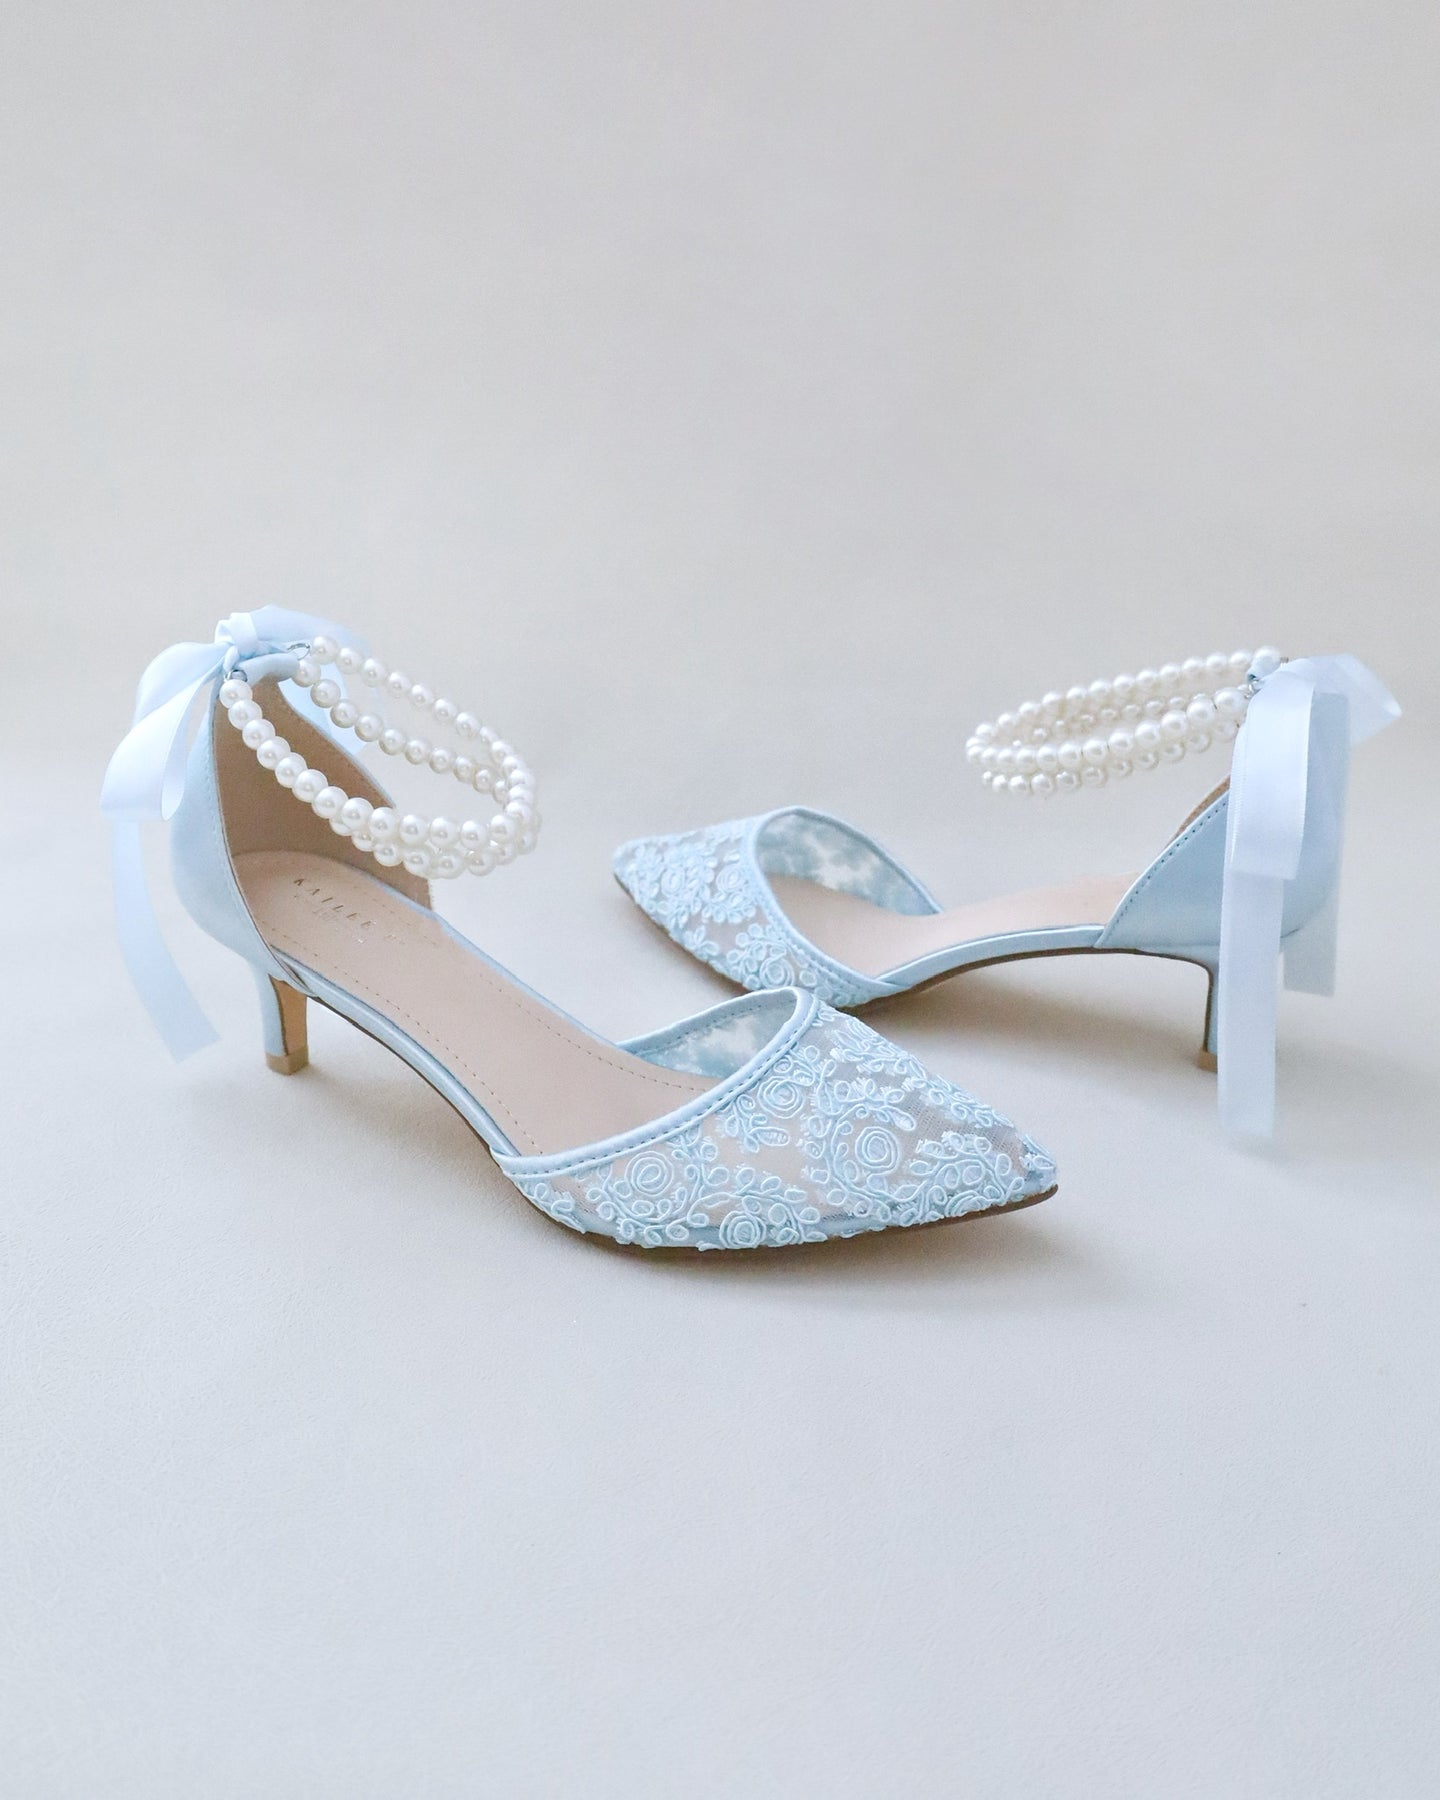 Bridal Shoes, Women Wedding Shoes, Bridal Shoes, Bridesmaids Shoes ...